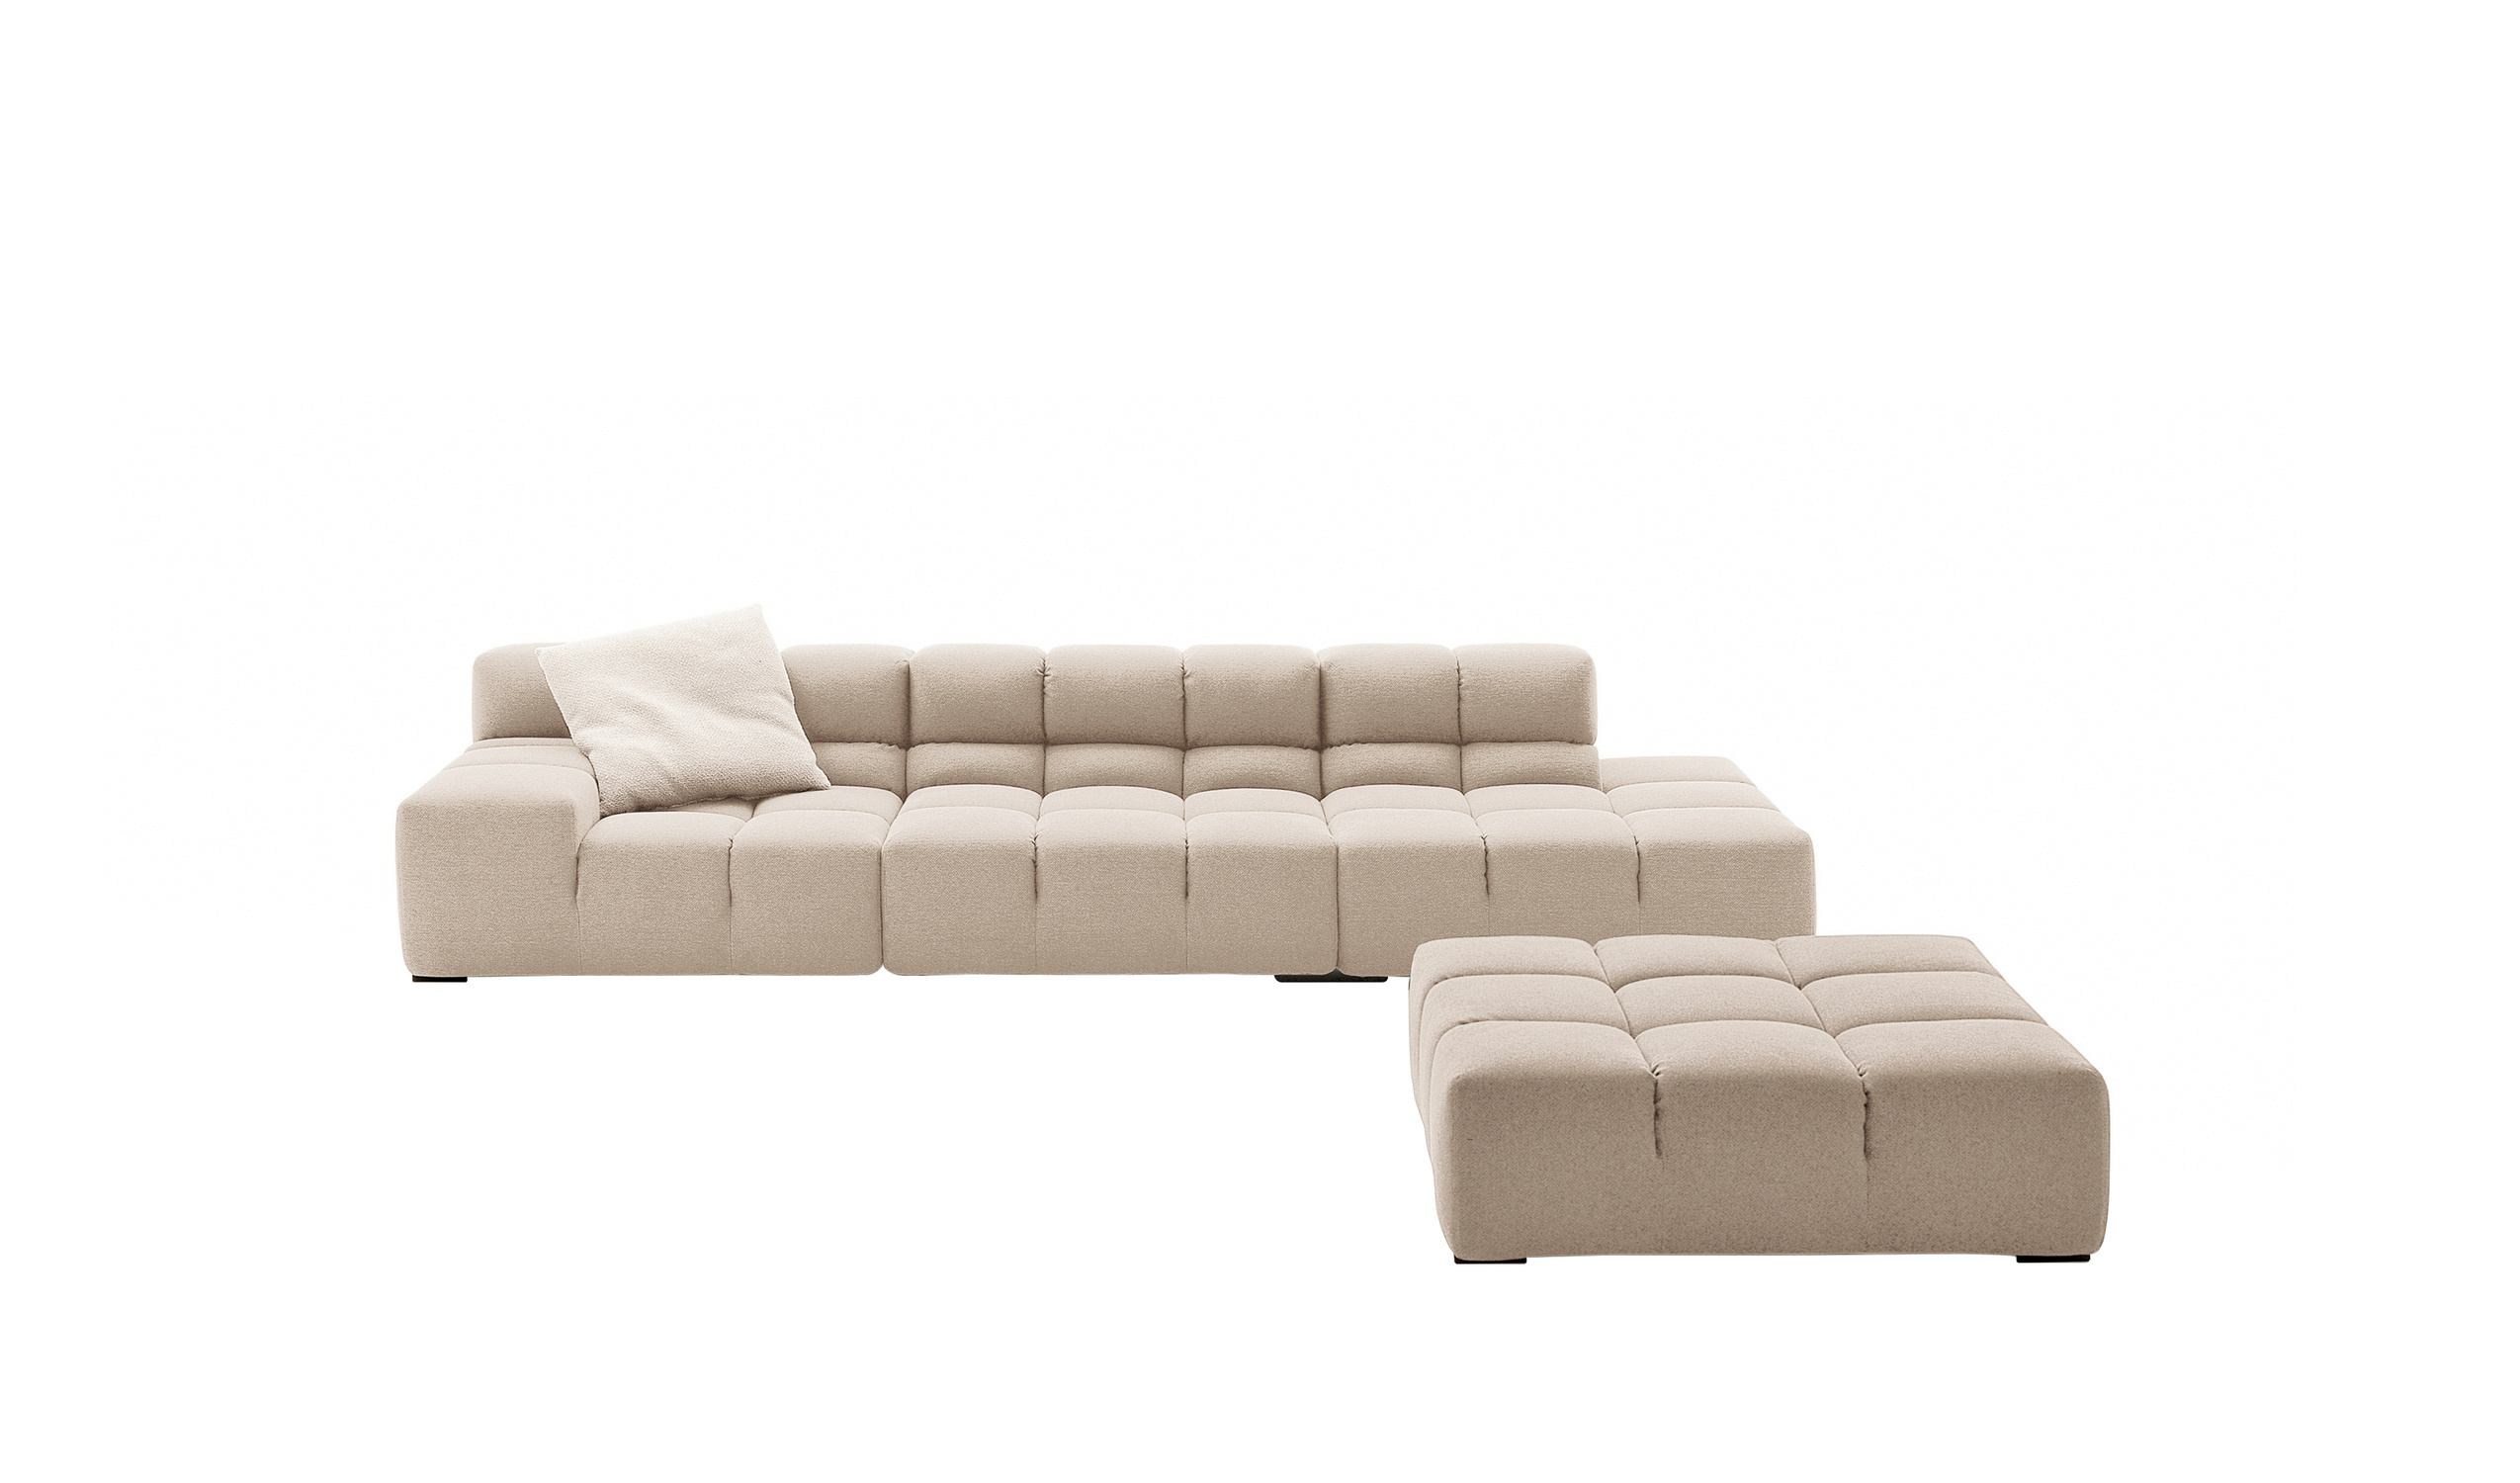 Modern designer italian sofas - Tufty-Time Sofas 4